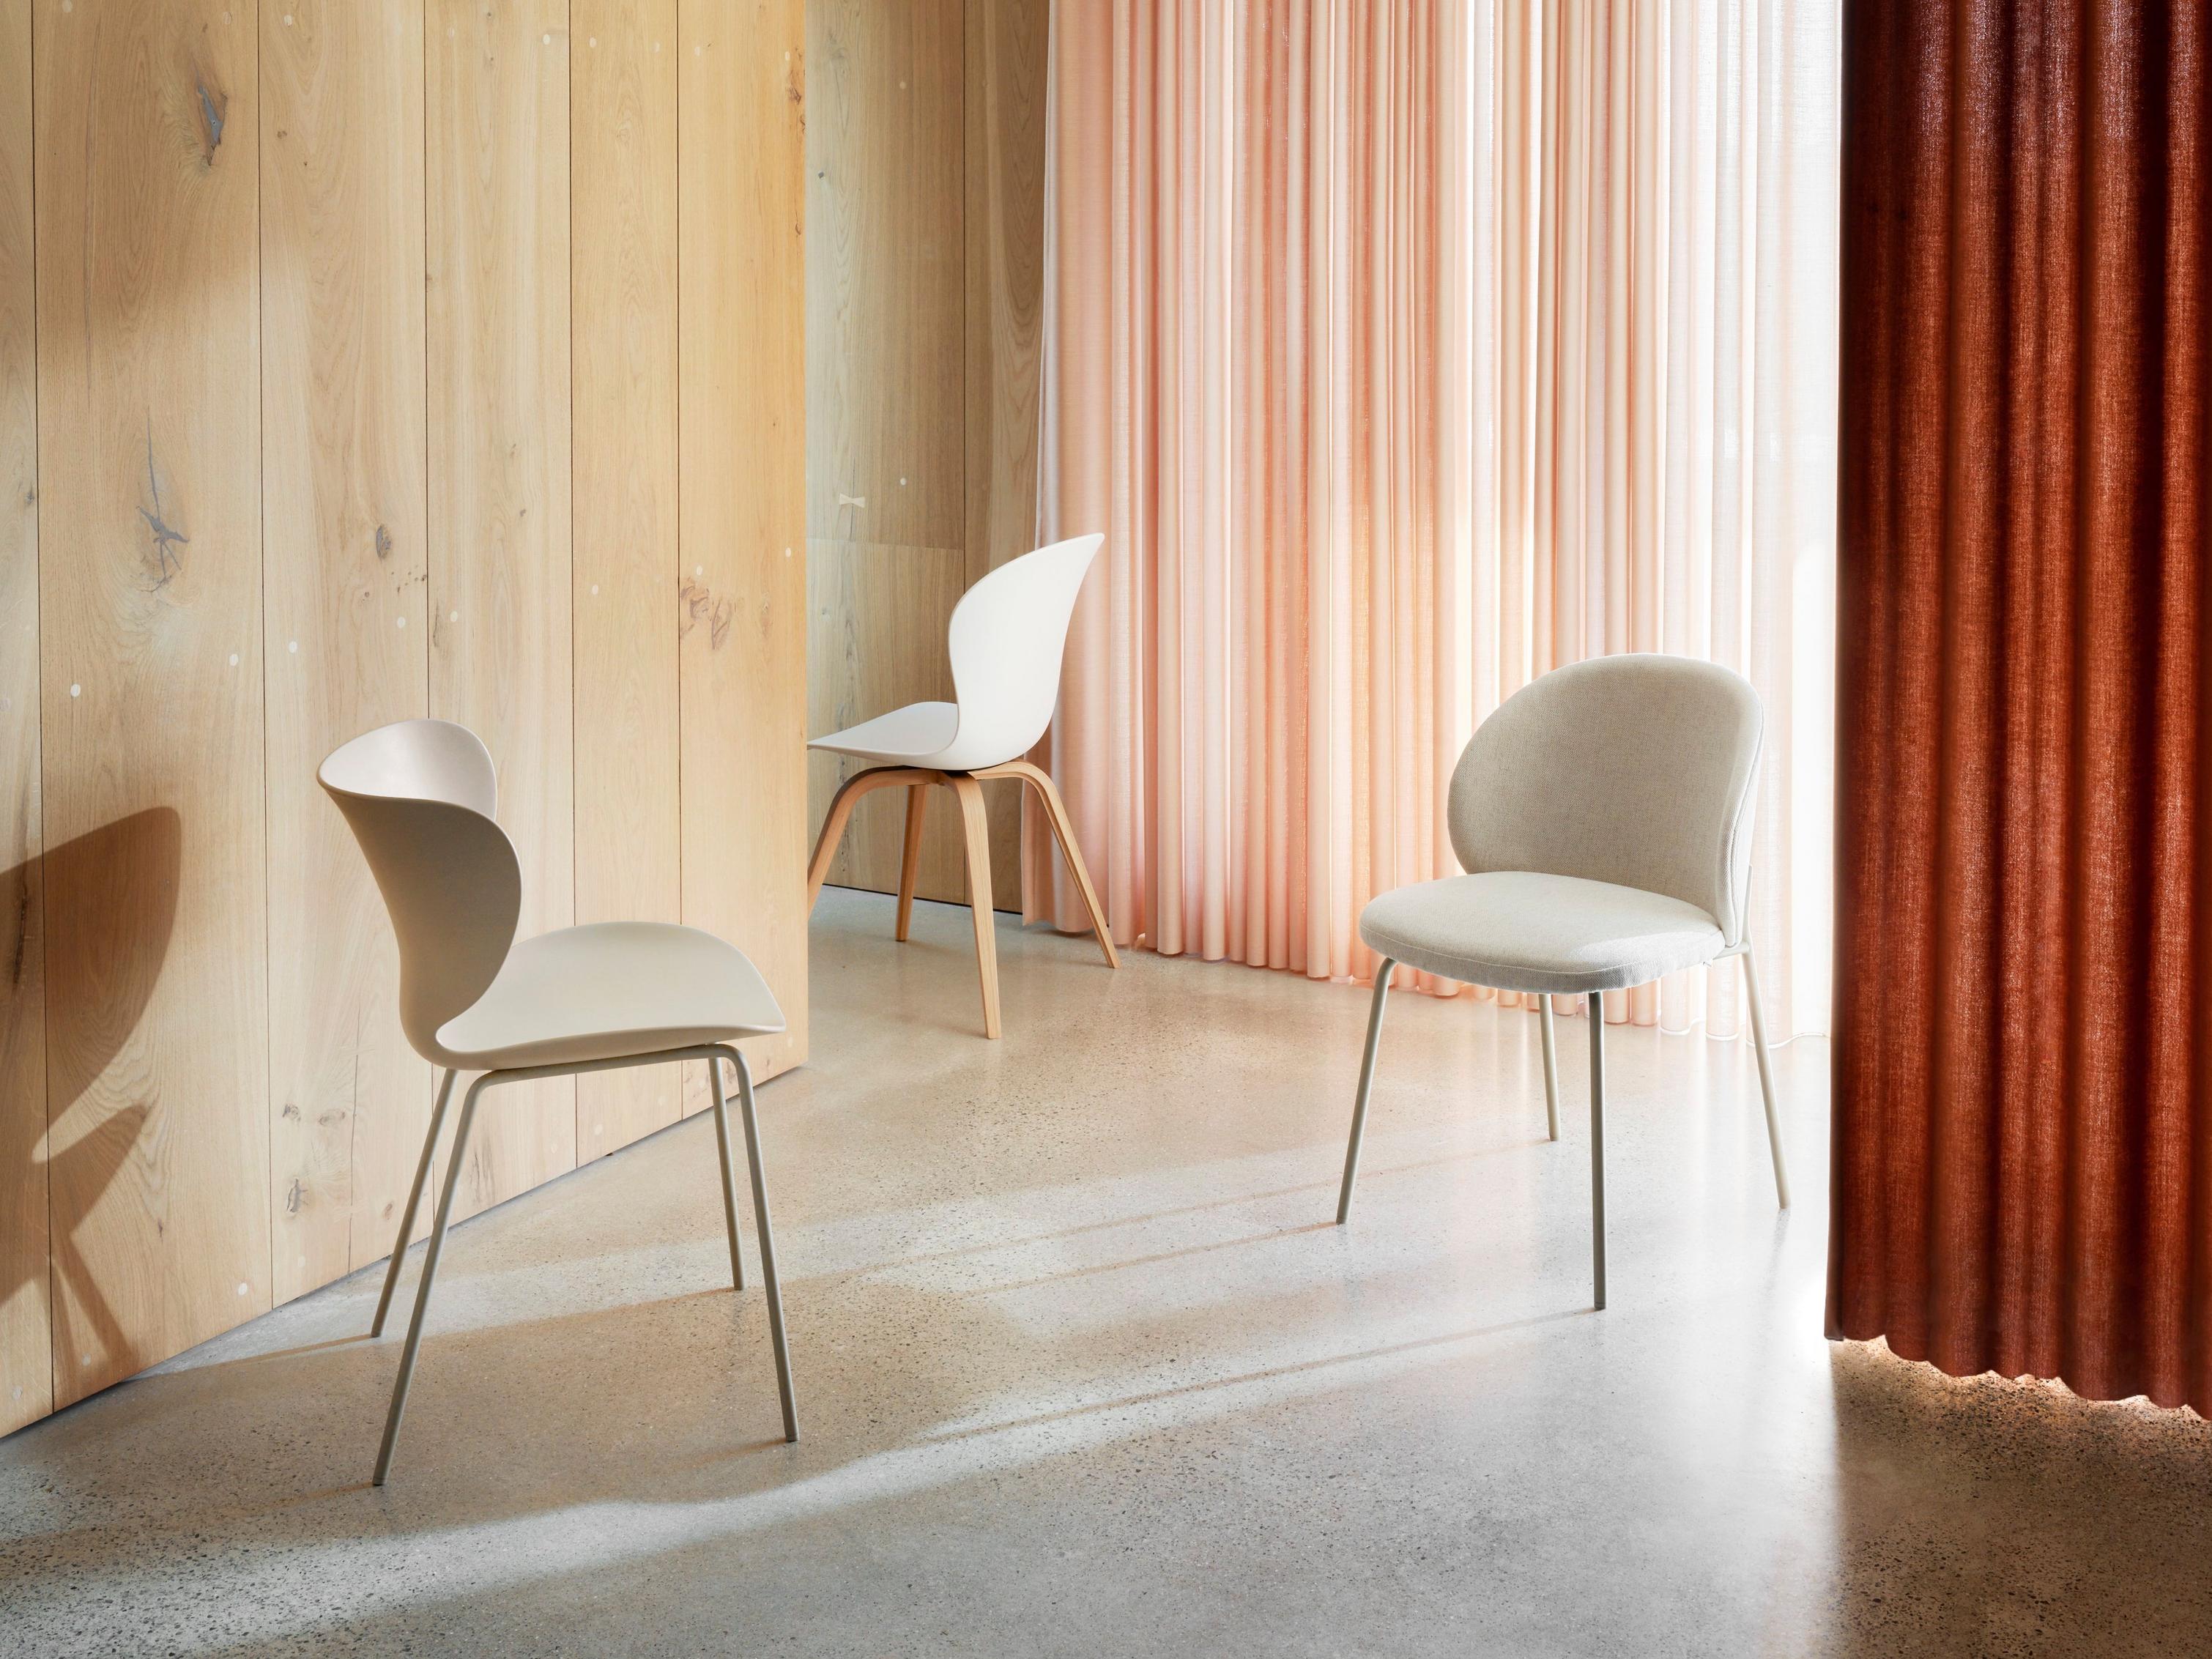 Современные стулья в комнате с деревянной стеной и драпированными коралловыми шторами.